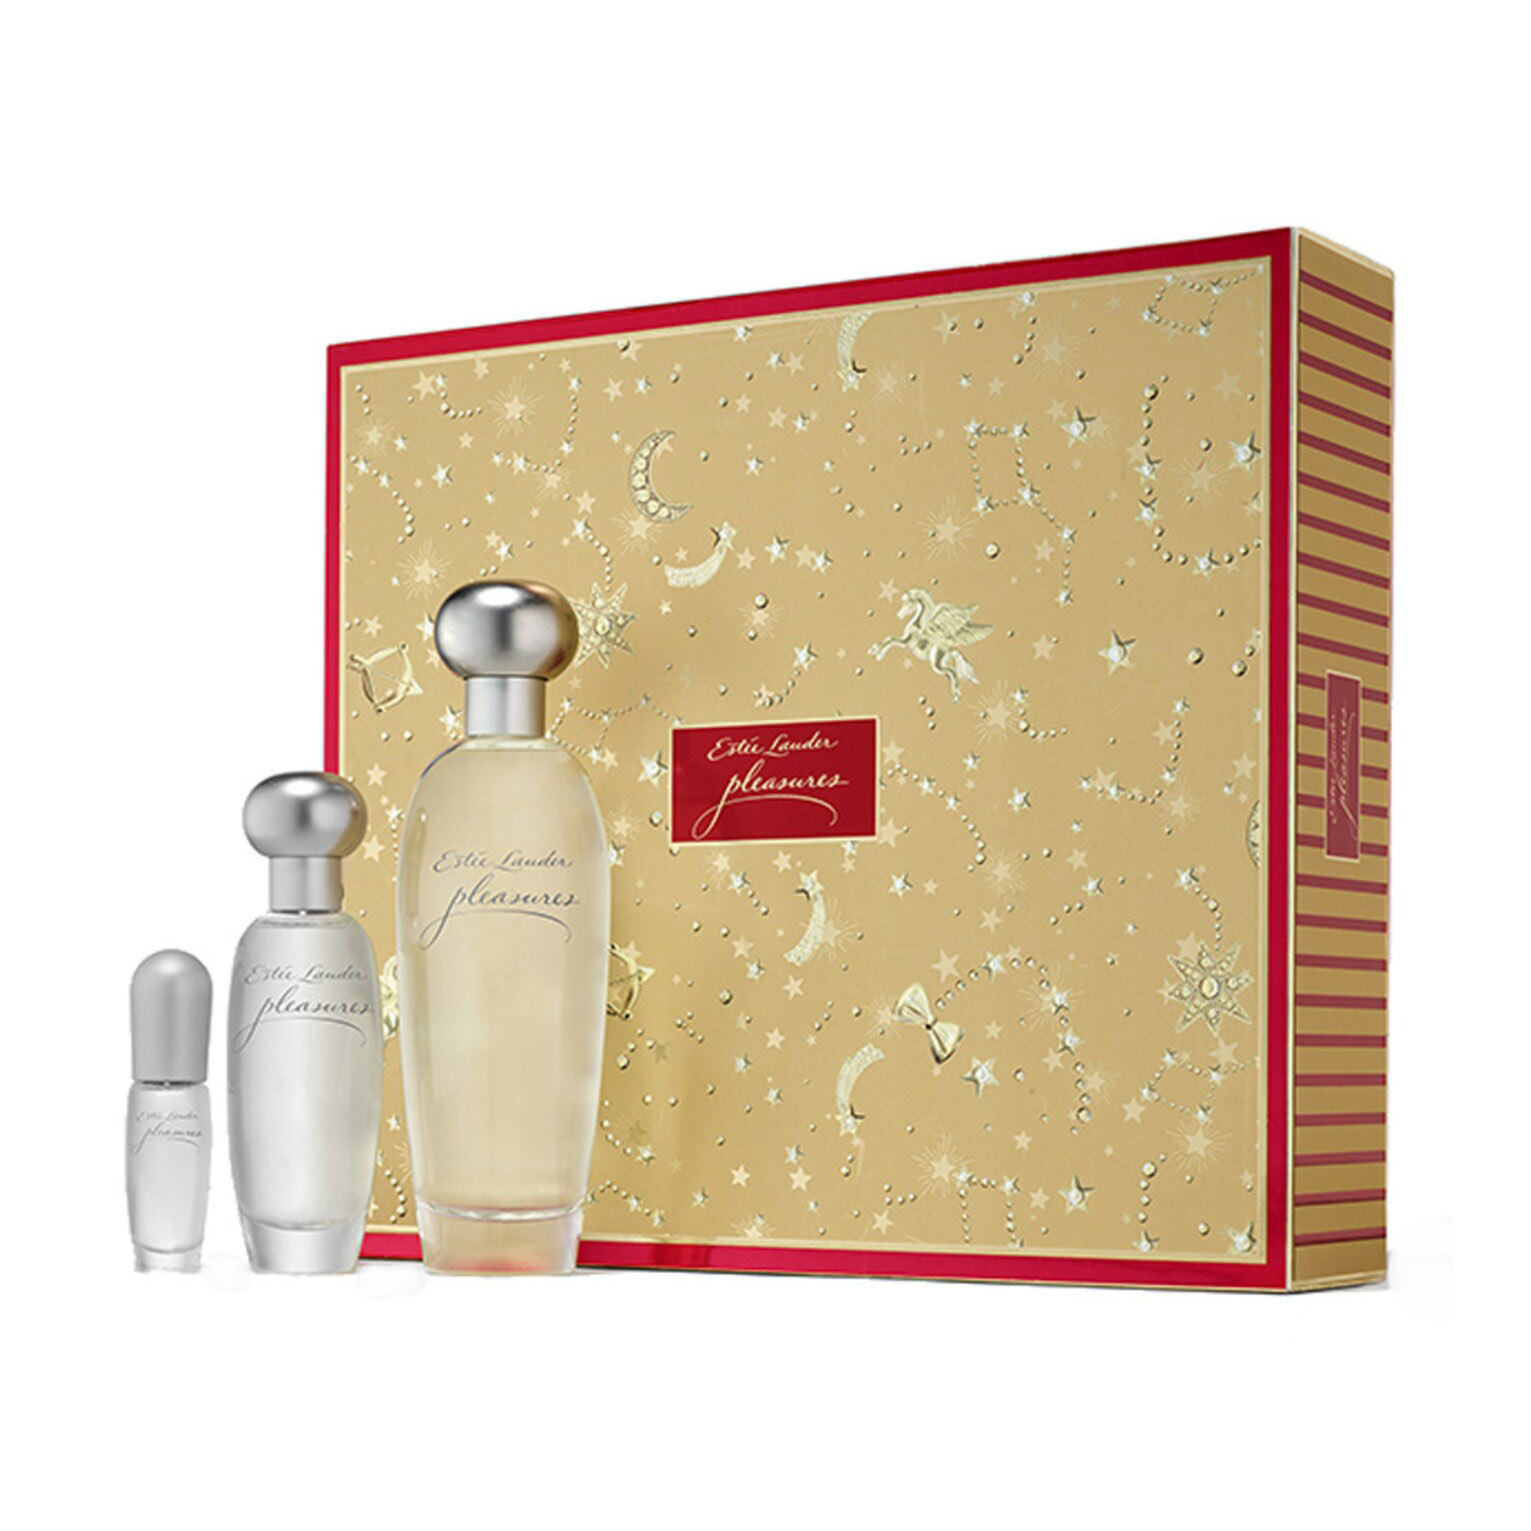 Подарочный парфюмерный набор Estee Lauder Pleasures Deluxe Trio Fragancias, 3 предмета женская парфюмерия estee lauder подарочный набор pleasures